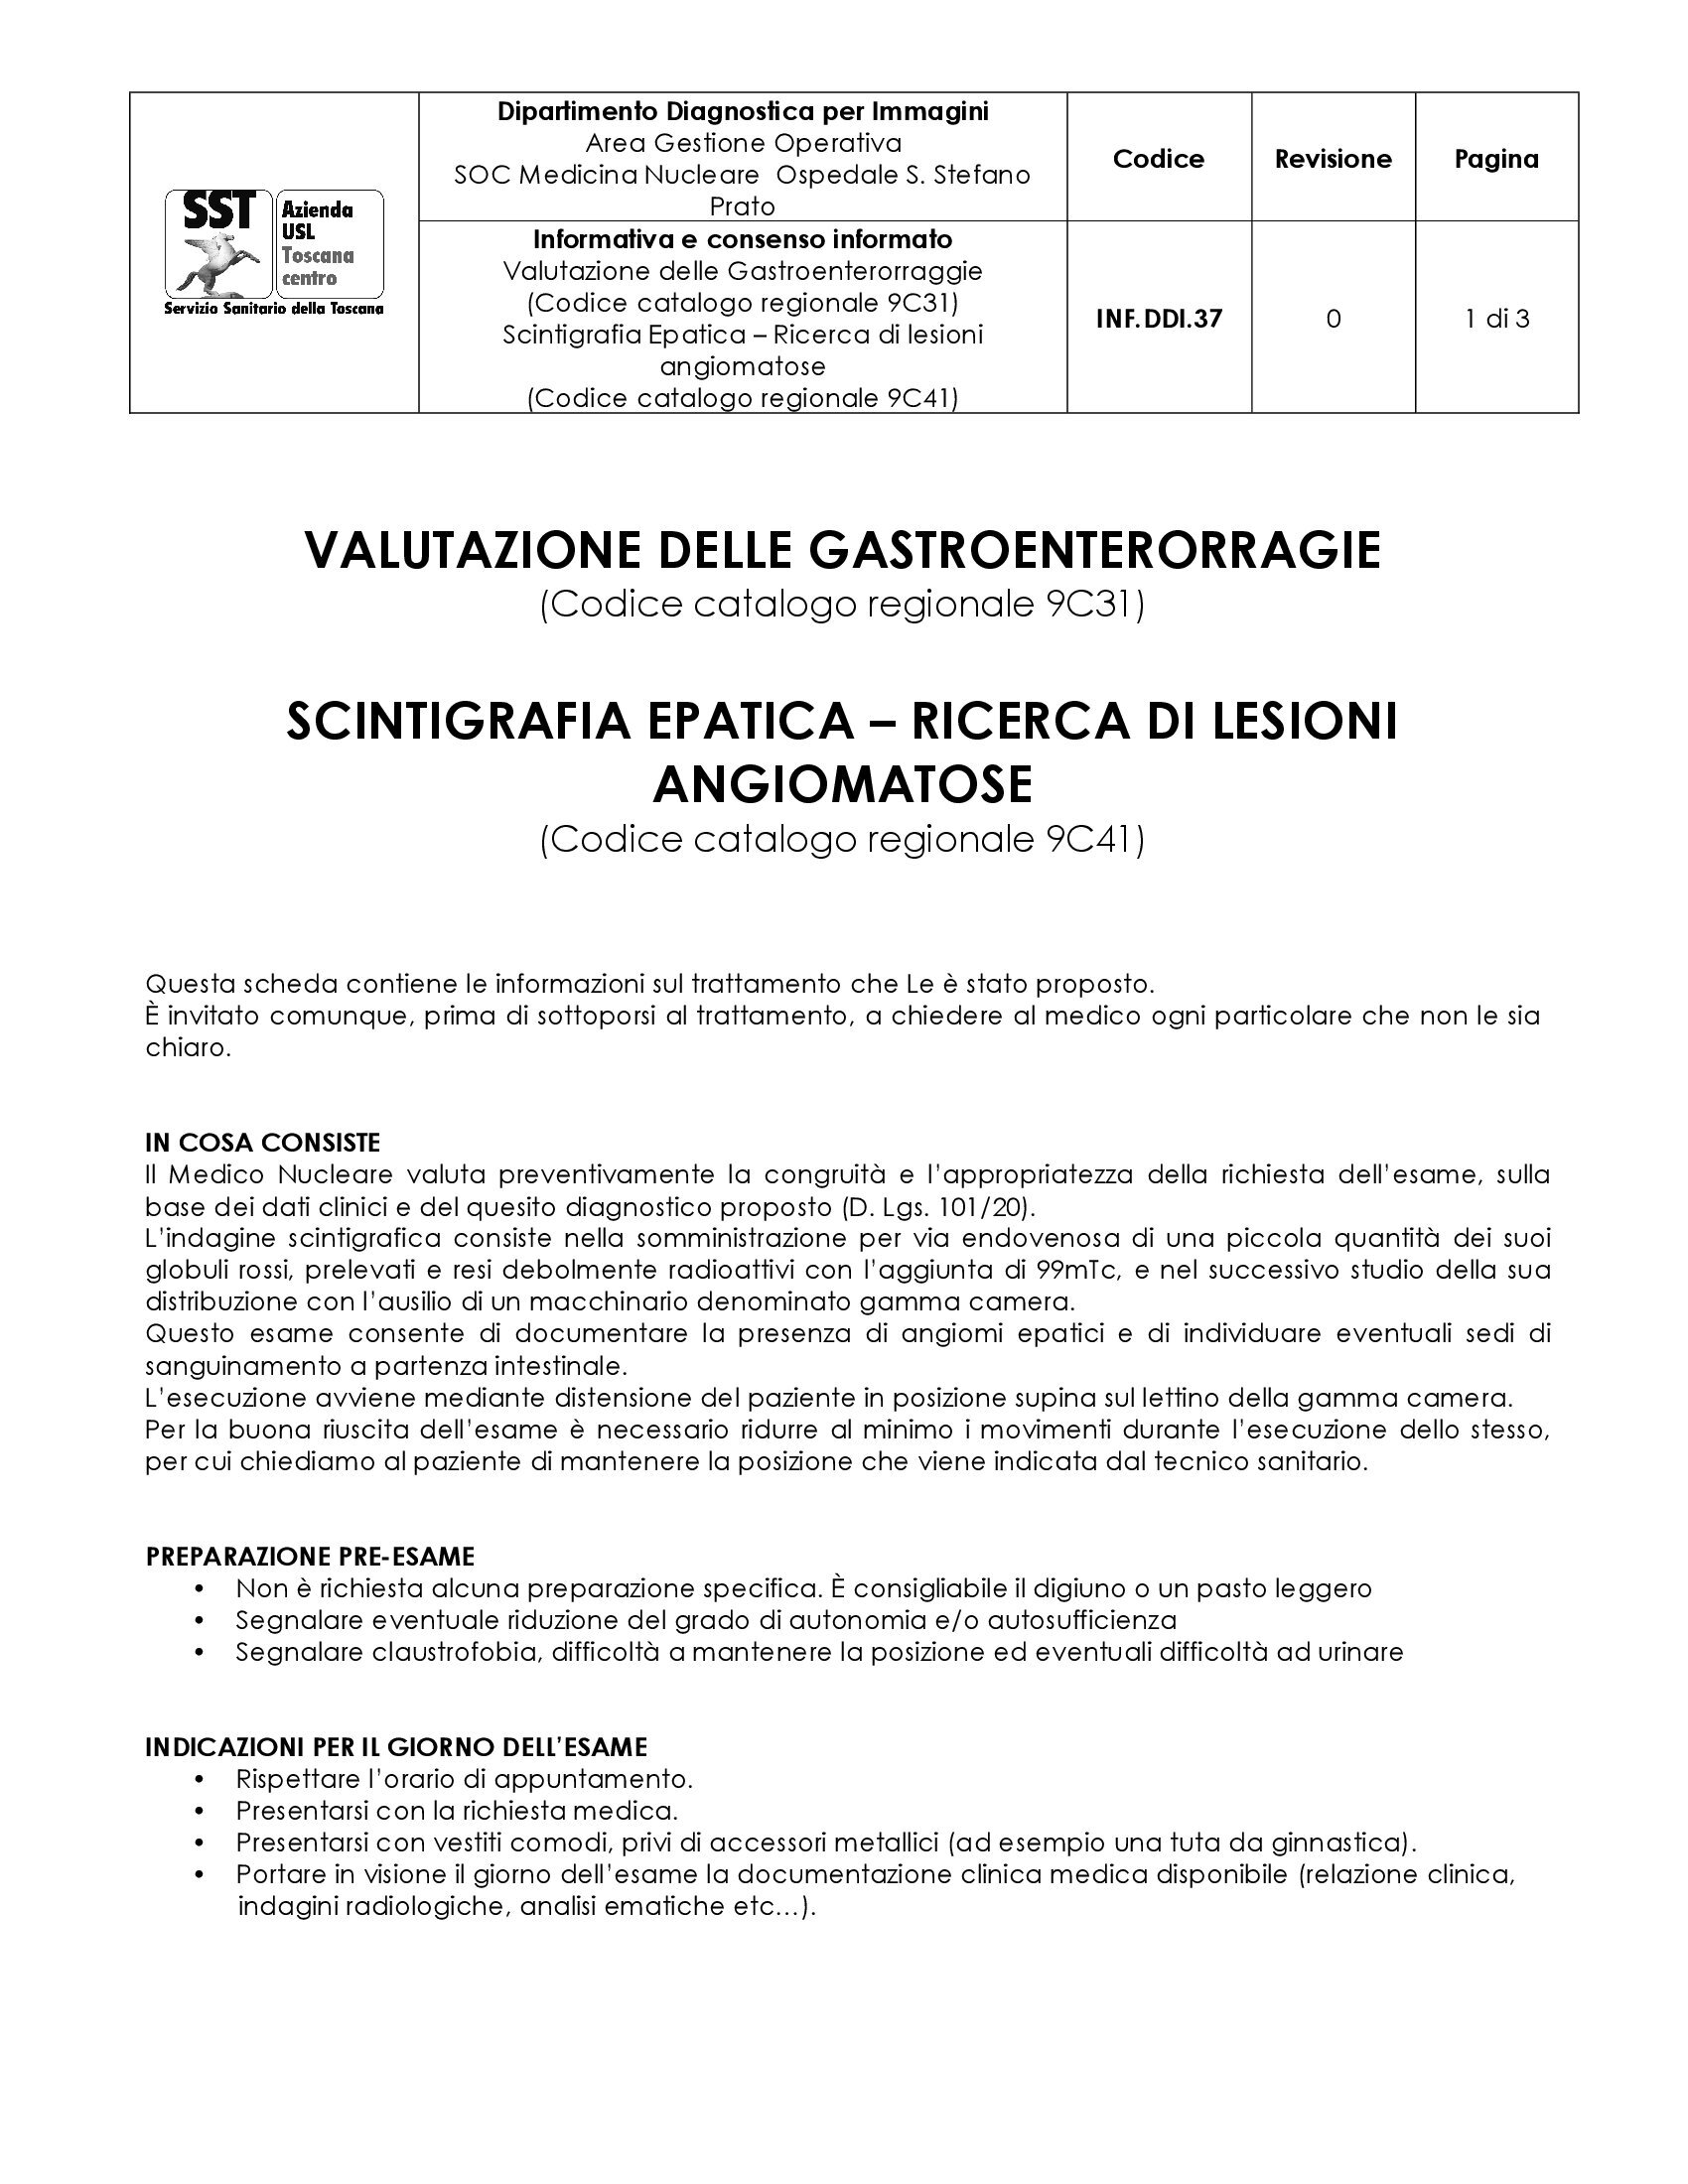 INF.DDI.37 Valutazione delle Gastroenterorraggie (Codice catalogo regionale 9C31) Scintigrafia Epatica – Ricerca di lesioni angiomatose (Codice catalogo regionale 9C41)